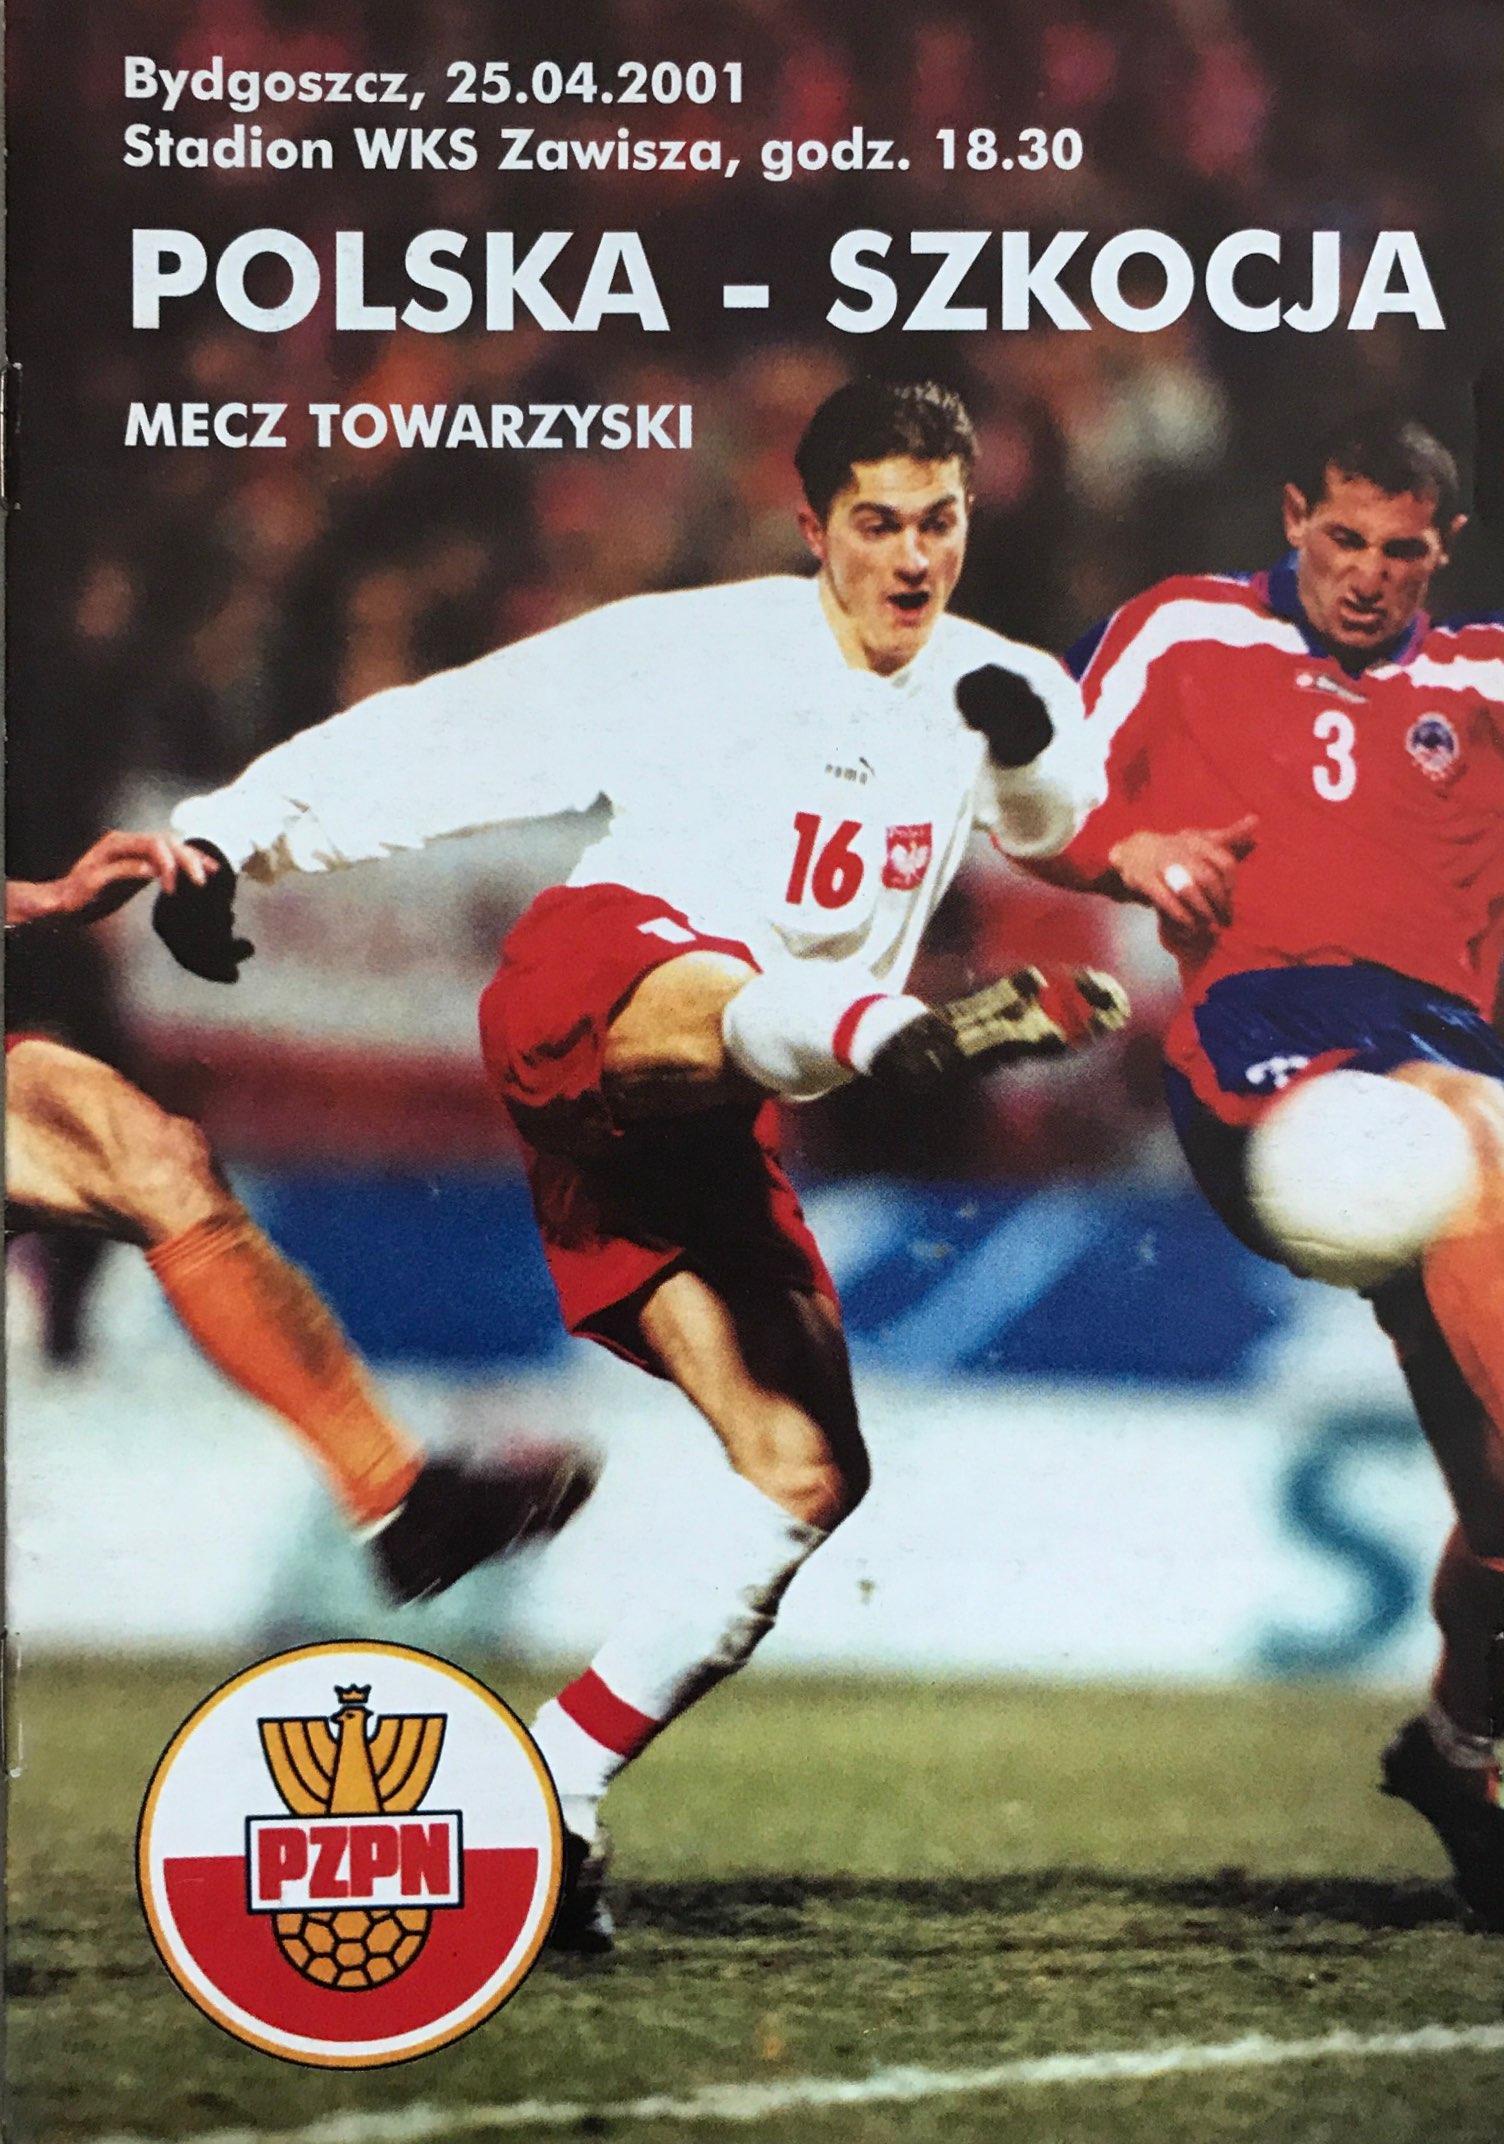 Program meczowy Polska - Szkocja 1:1 (25.04.2001).